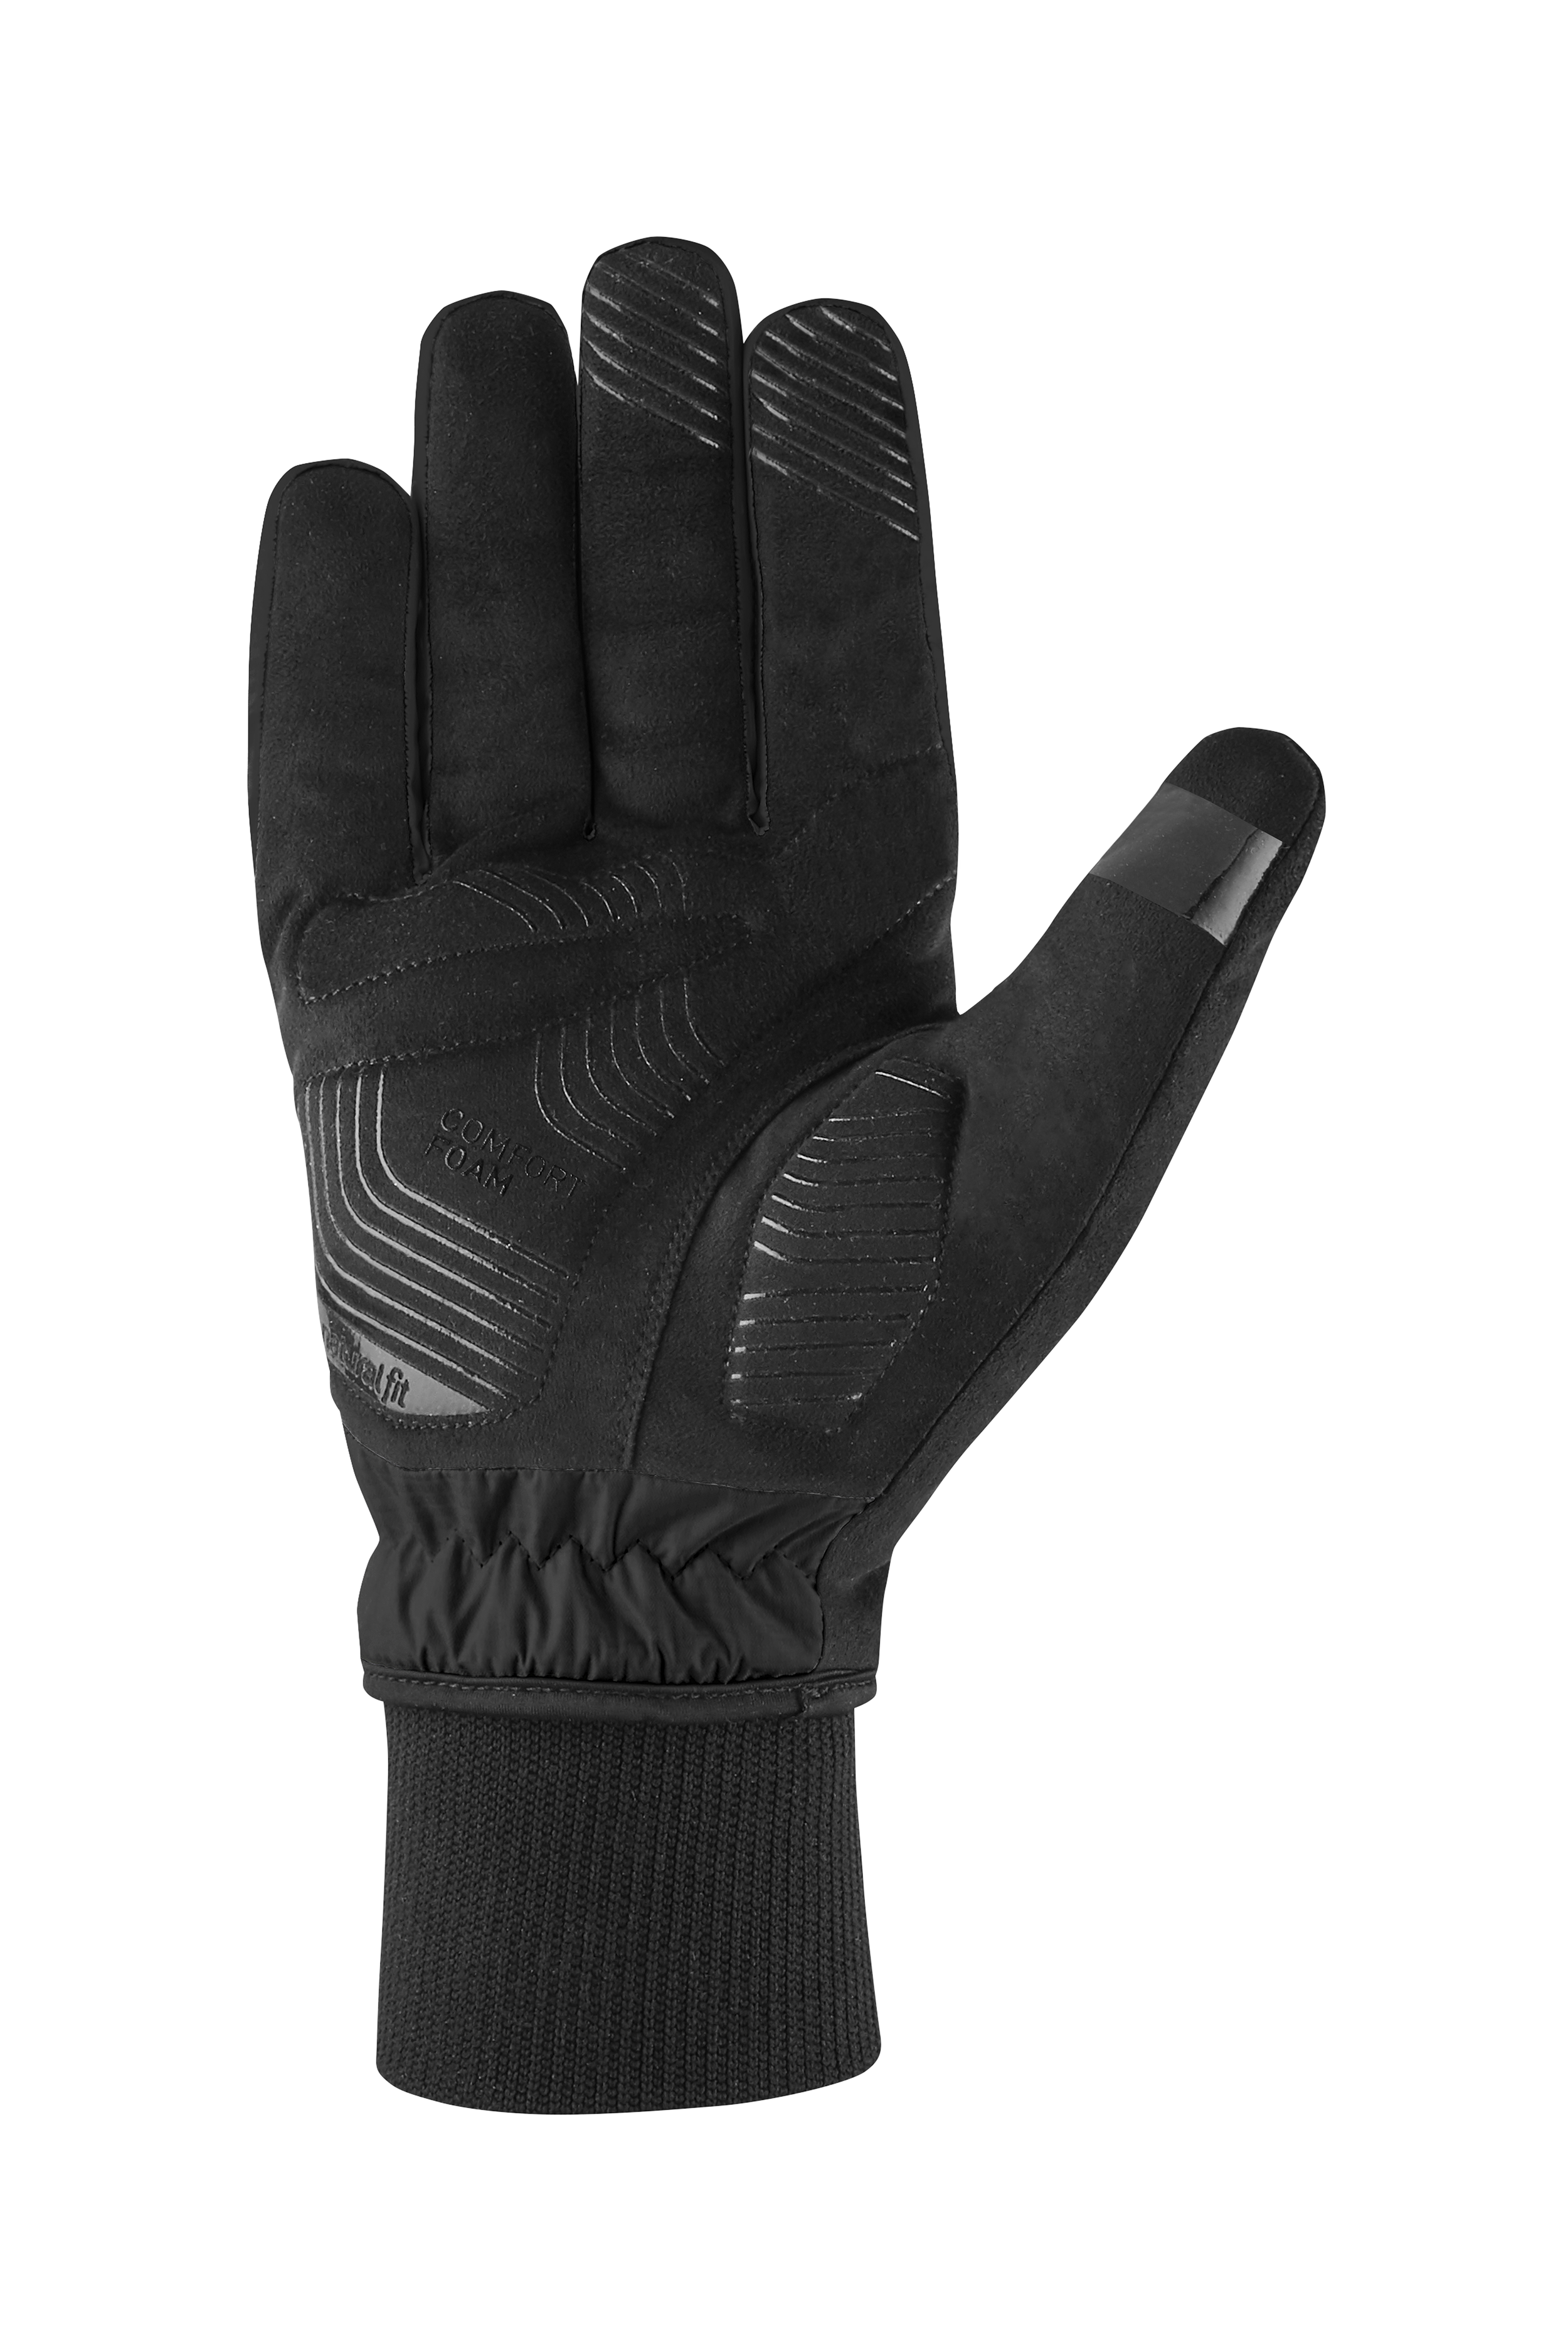 Handschuhe Winter langfinger X NF black (XL (10))